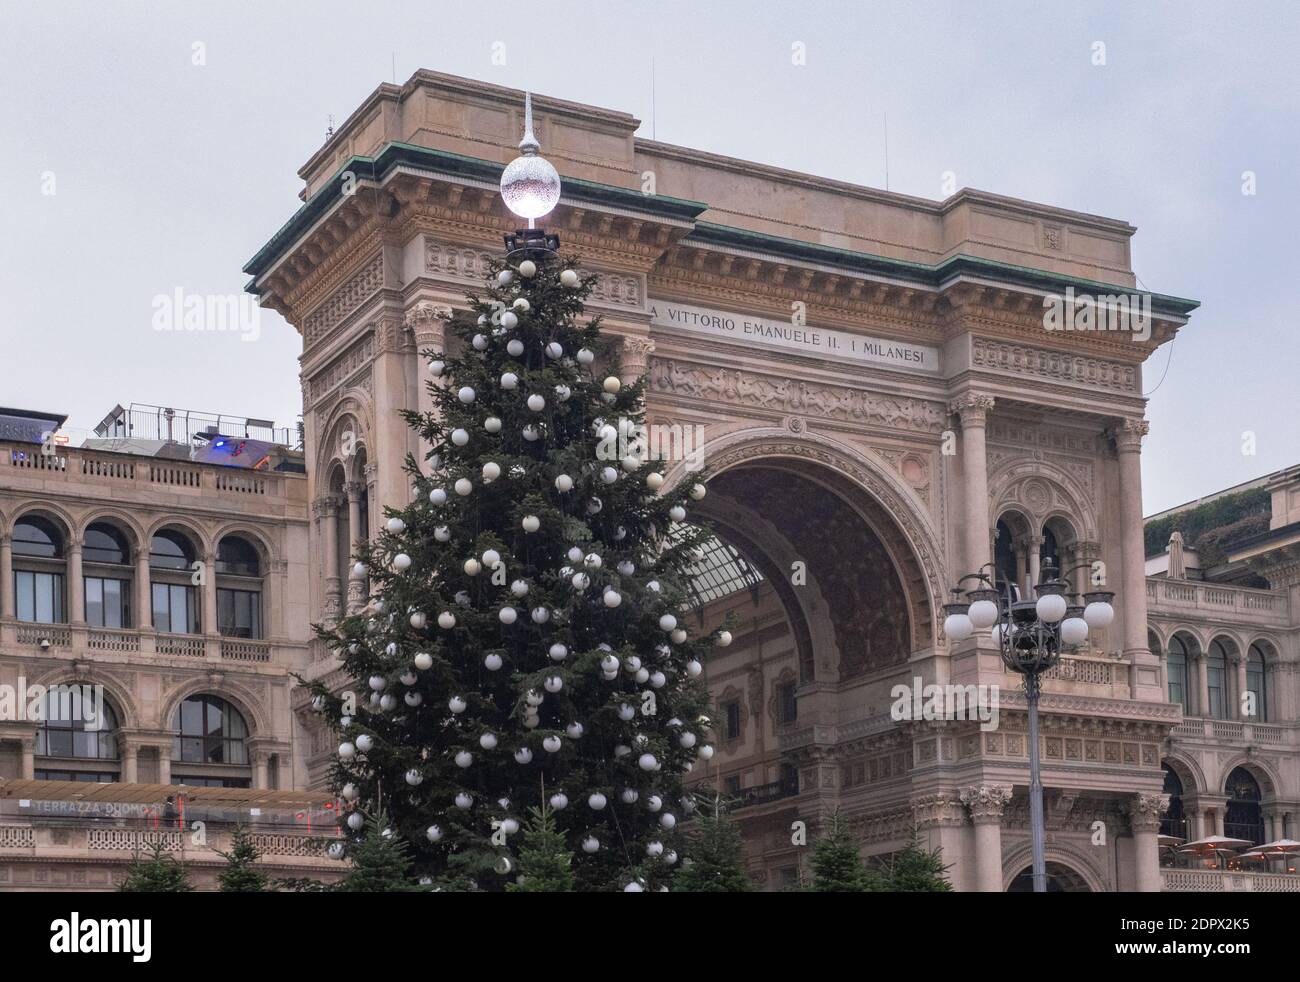 Entrada a la galería Vittorio Emanuele decorada con un gran árbol de Navidad.  Plaza del Duomo, Milán, Italia Fotografía de stock - Alamy